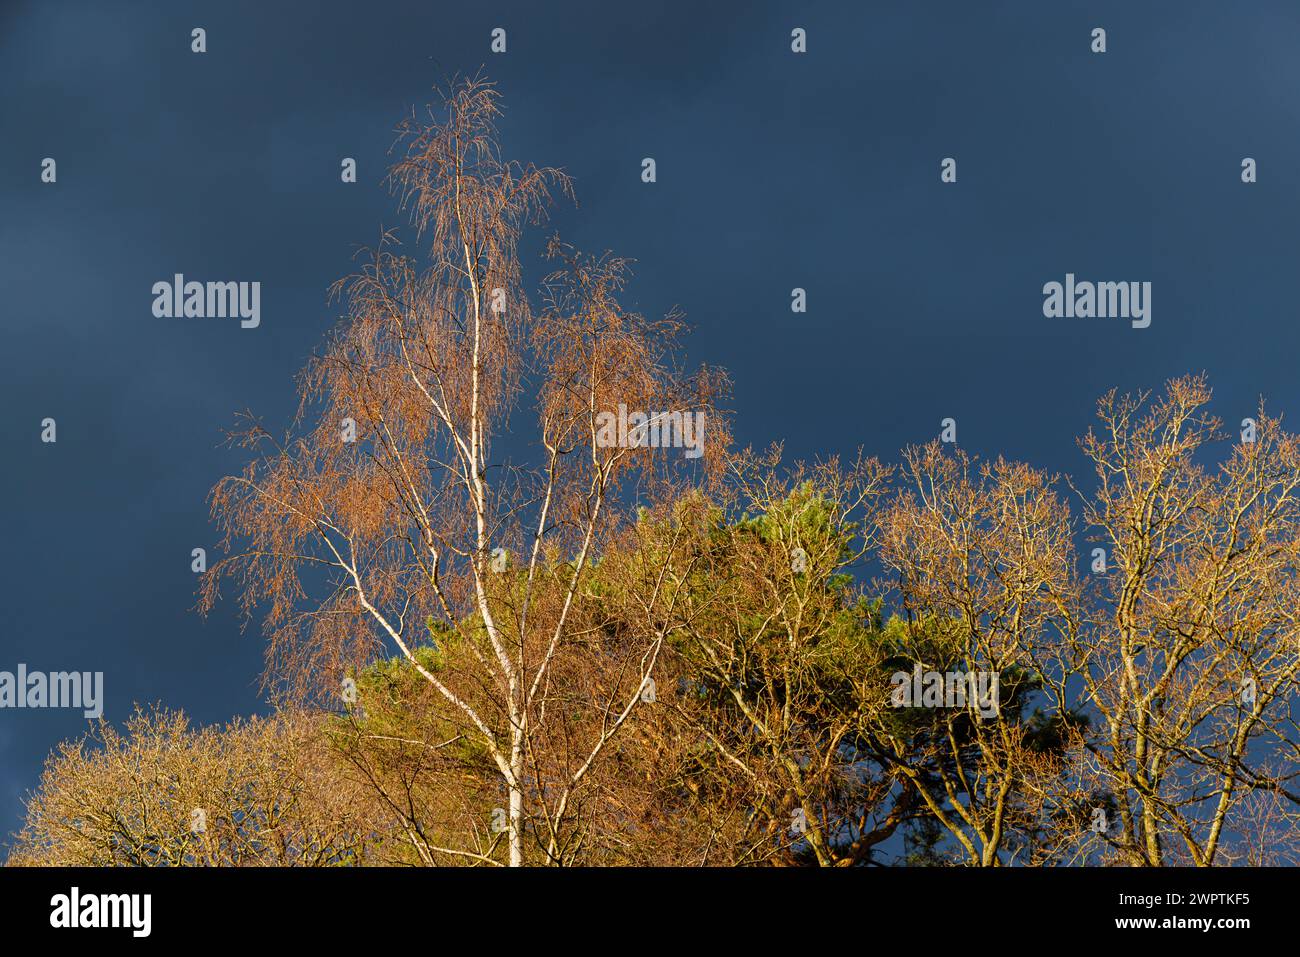 Le soleil printanier de la fin de l'après-midi attrape des arbres sans feuilles de bouleau argenté (Betula pendula) et de chêne (Quercus robur) contre un ciel gris foncé dans le sud-est de l'Angleterre Banque D'Images